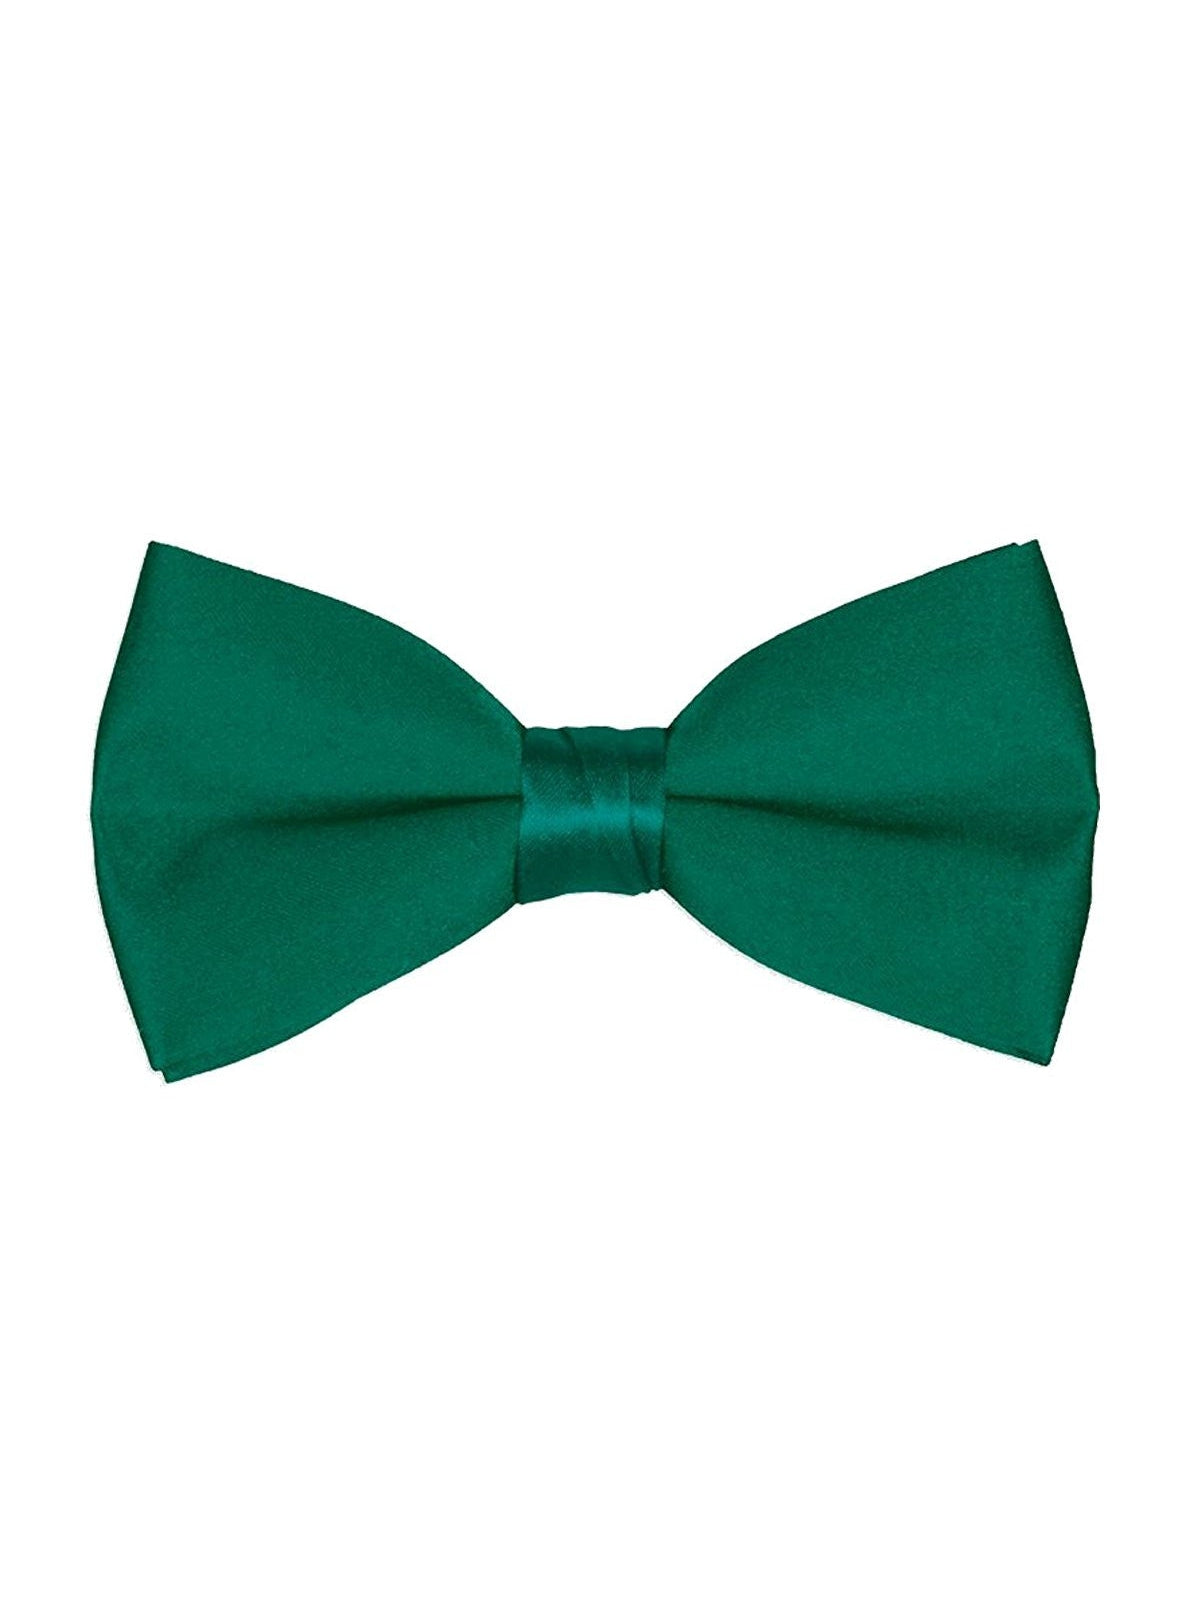 Men's Classic Pre-Tied Formal Tuxedo Bow Tie - Emerald Green